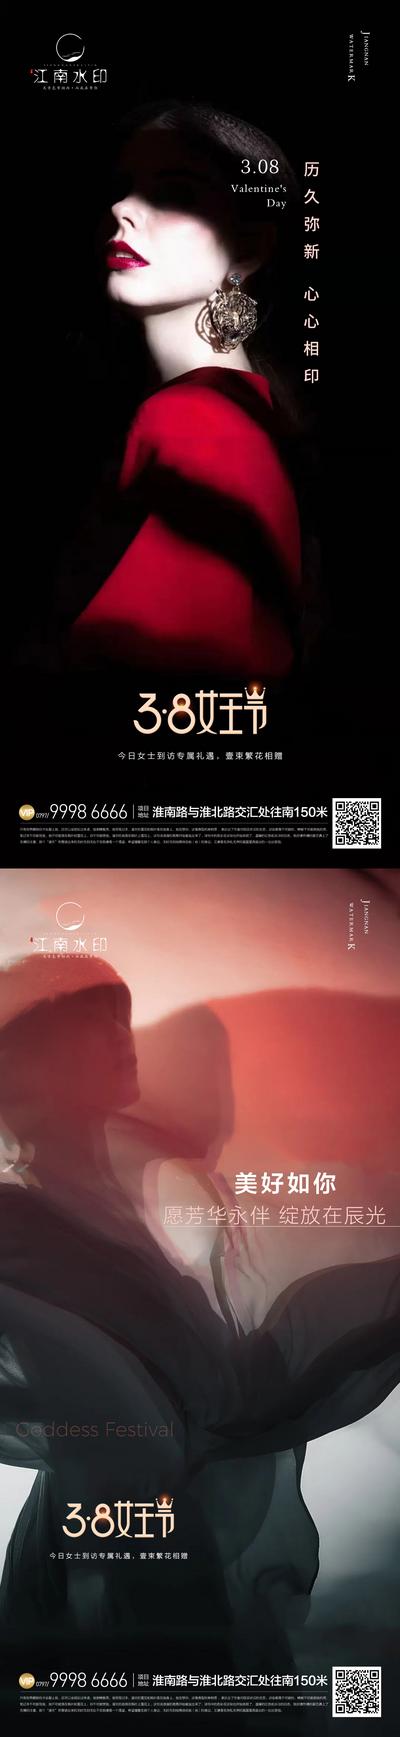 南门网 海报 公历节日 38妇女节 女神节 女王节 人物